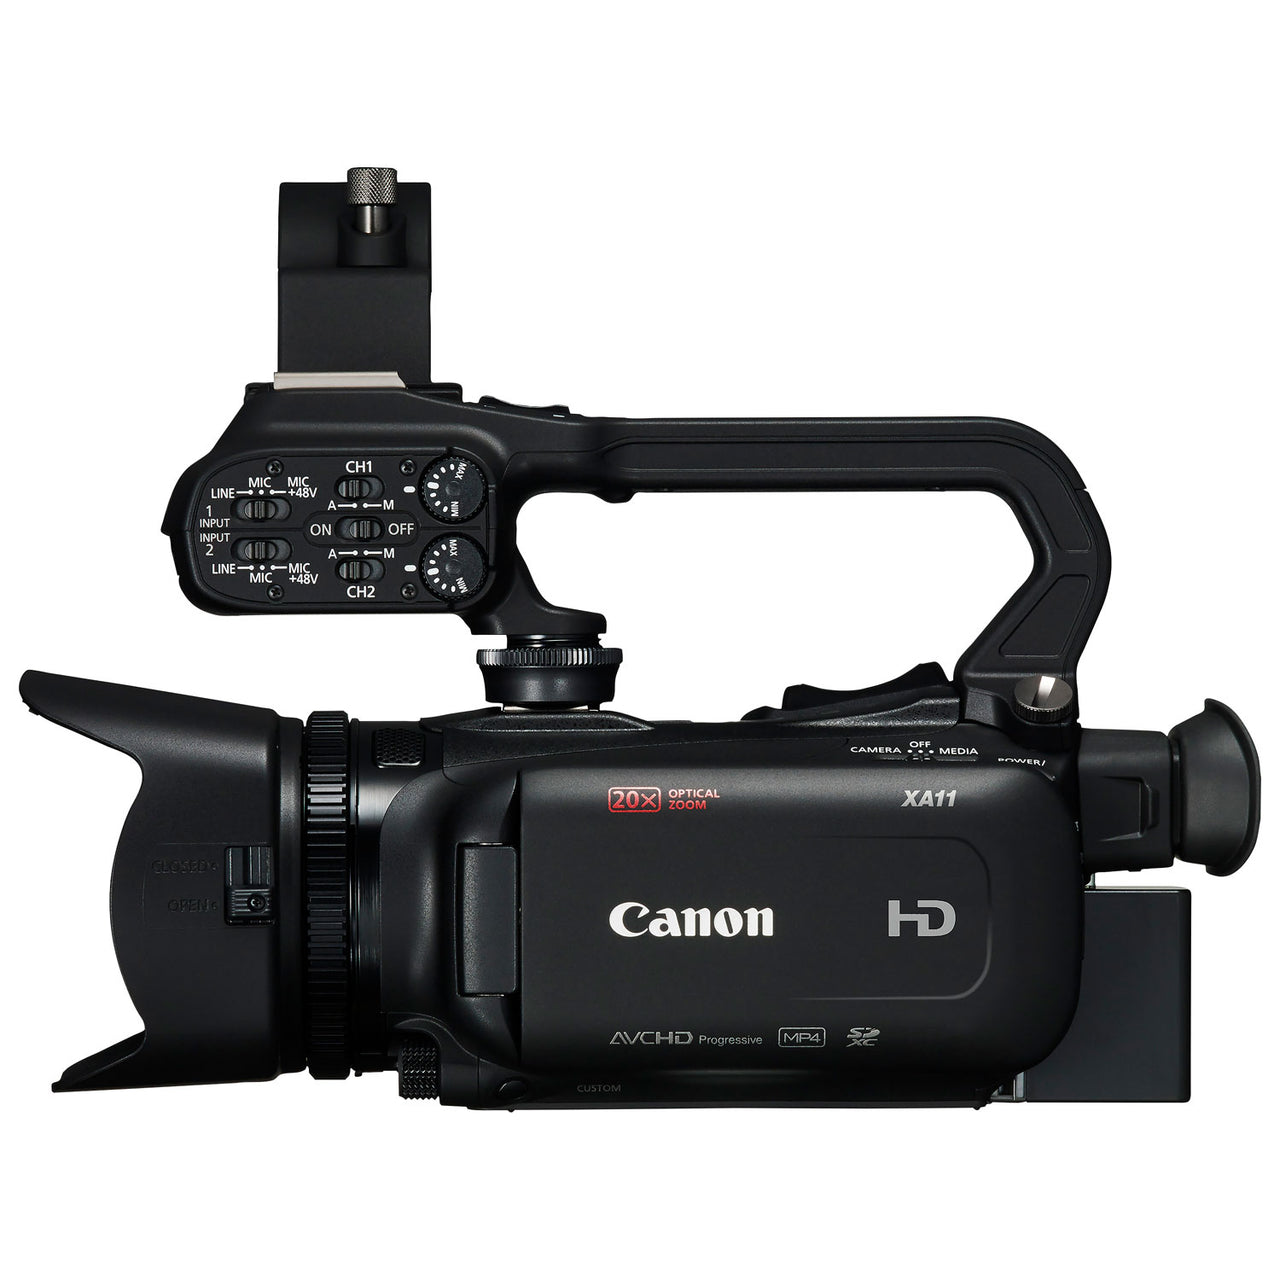 Canon XA11 HD Flash Memory Camcorder